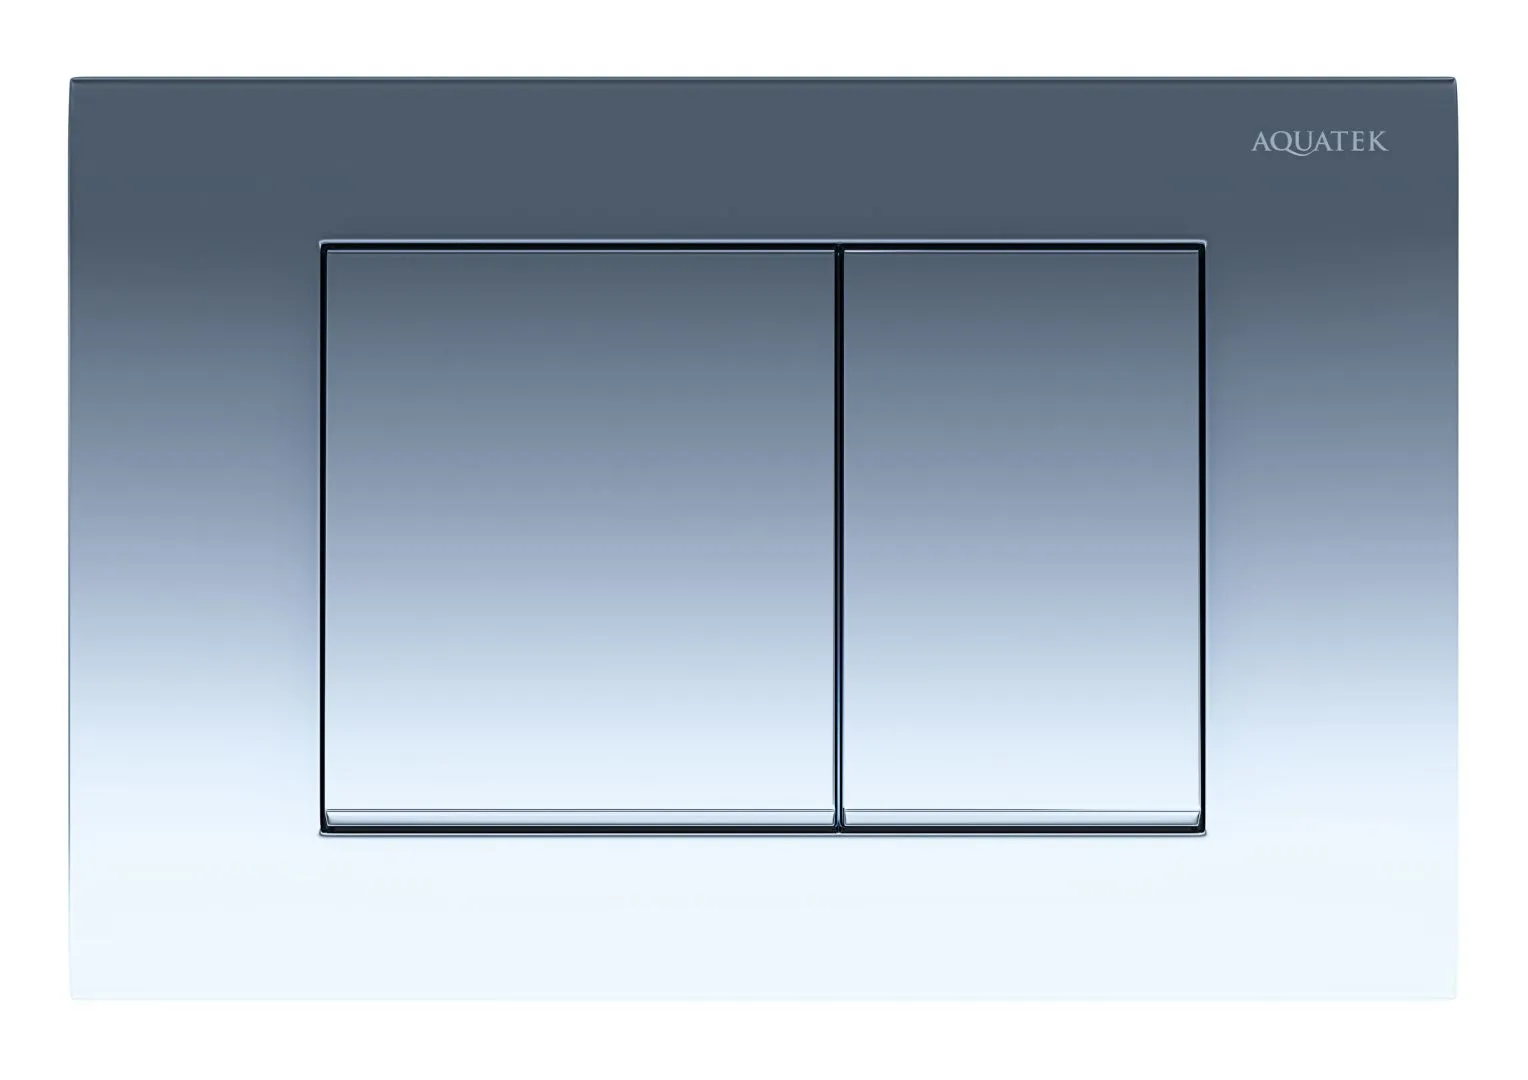 KDI-0000013 (002A) Панель смыва Белая (клавиши прямоугольные)